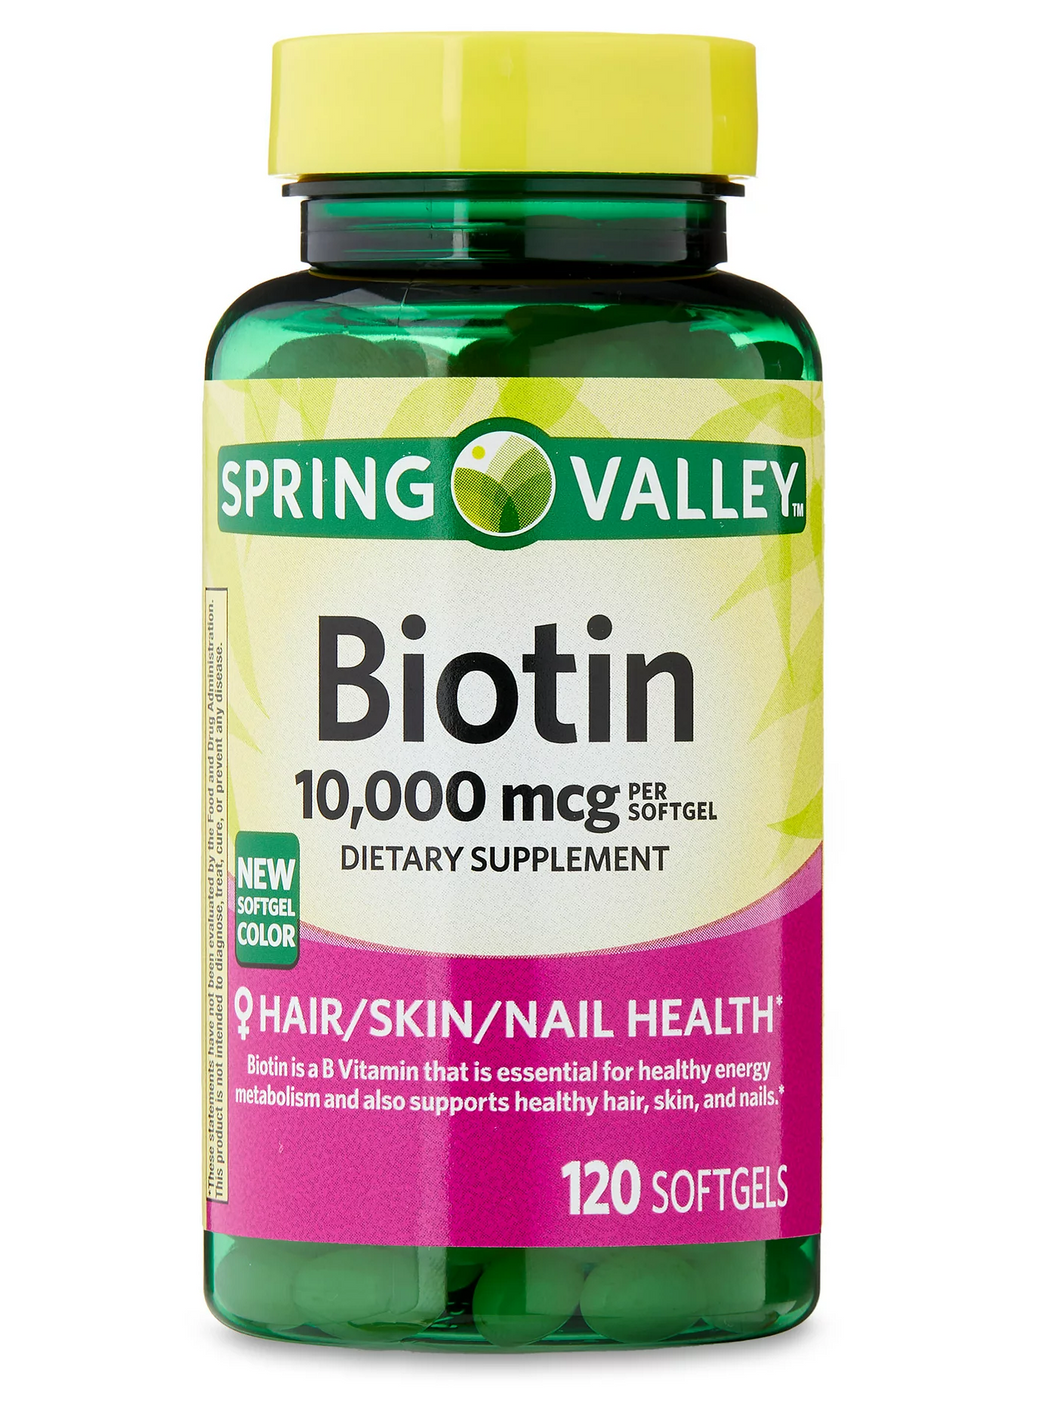 Biotina para la salud de tu pelo, piel, y uñas. Spring Valley. 10,000 mcg. 120 Cápsulas